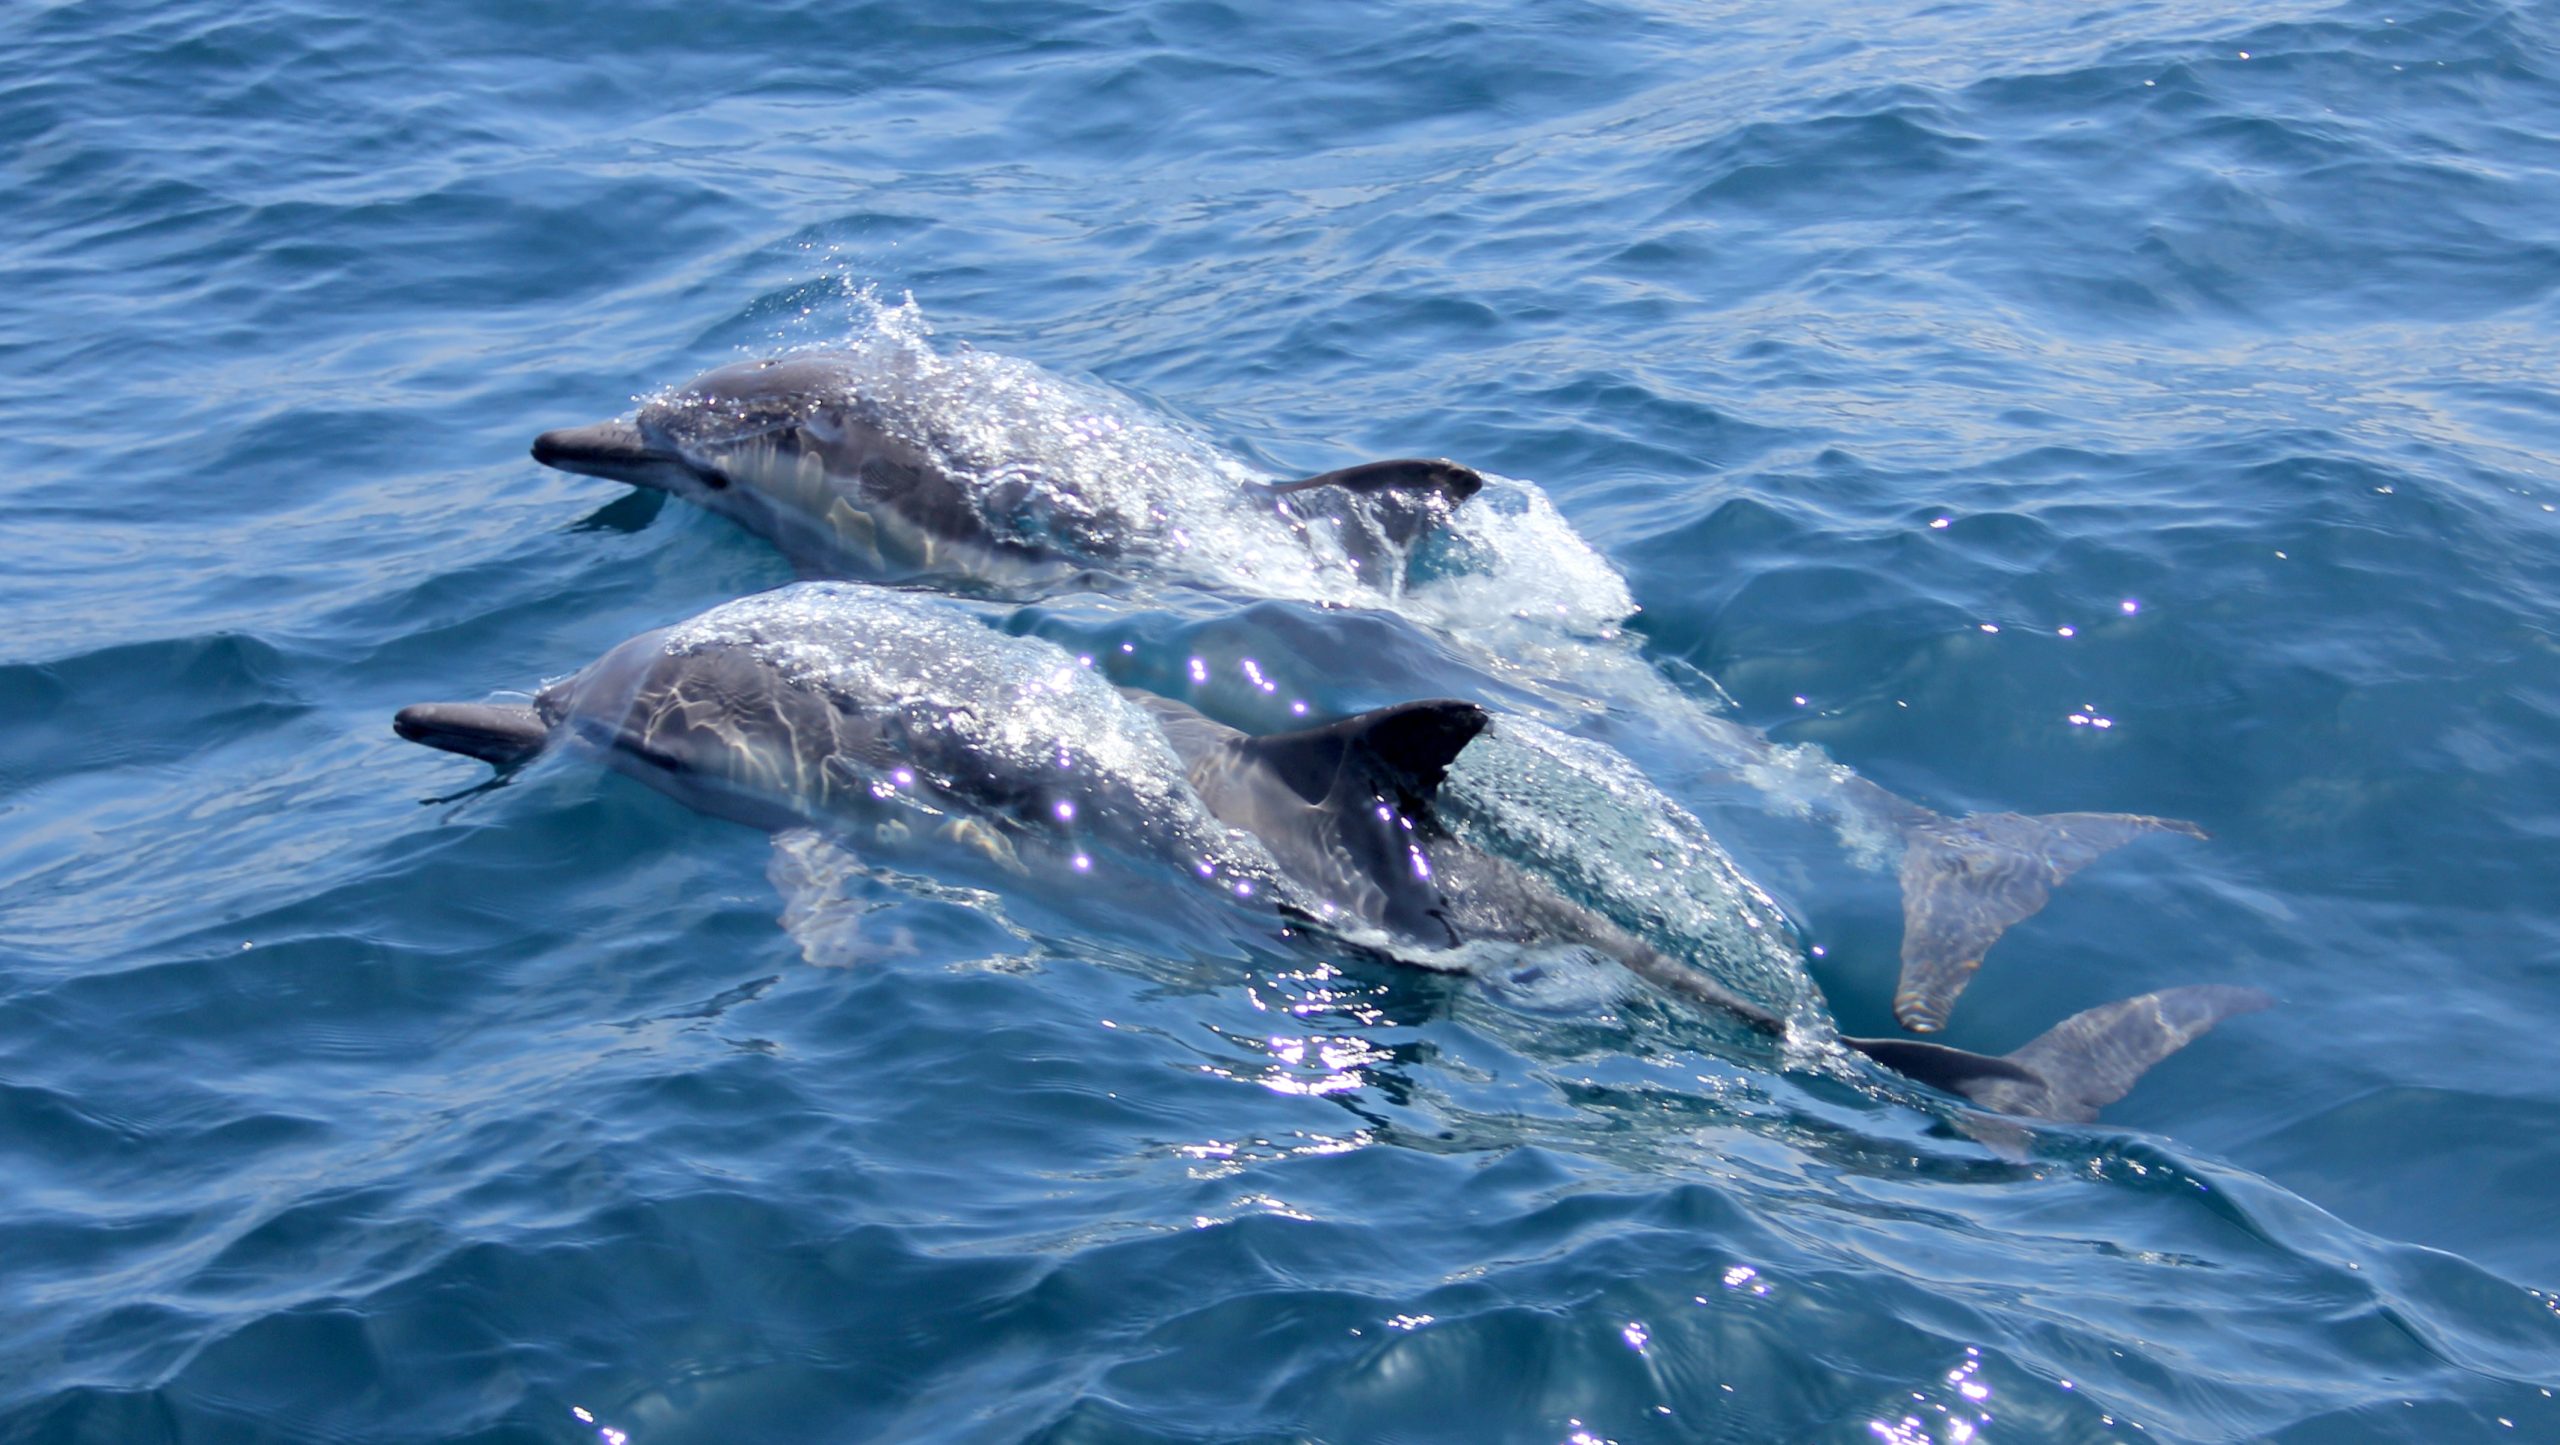 Explorez les eaux croates et admirez les dauphins lors de votre séjour inoubliable !